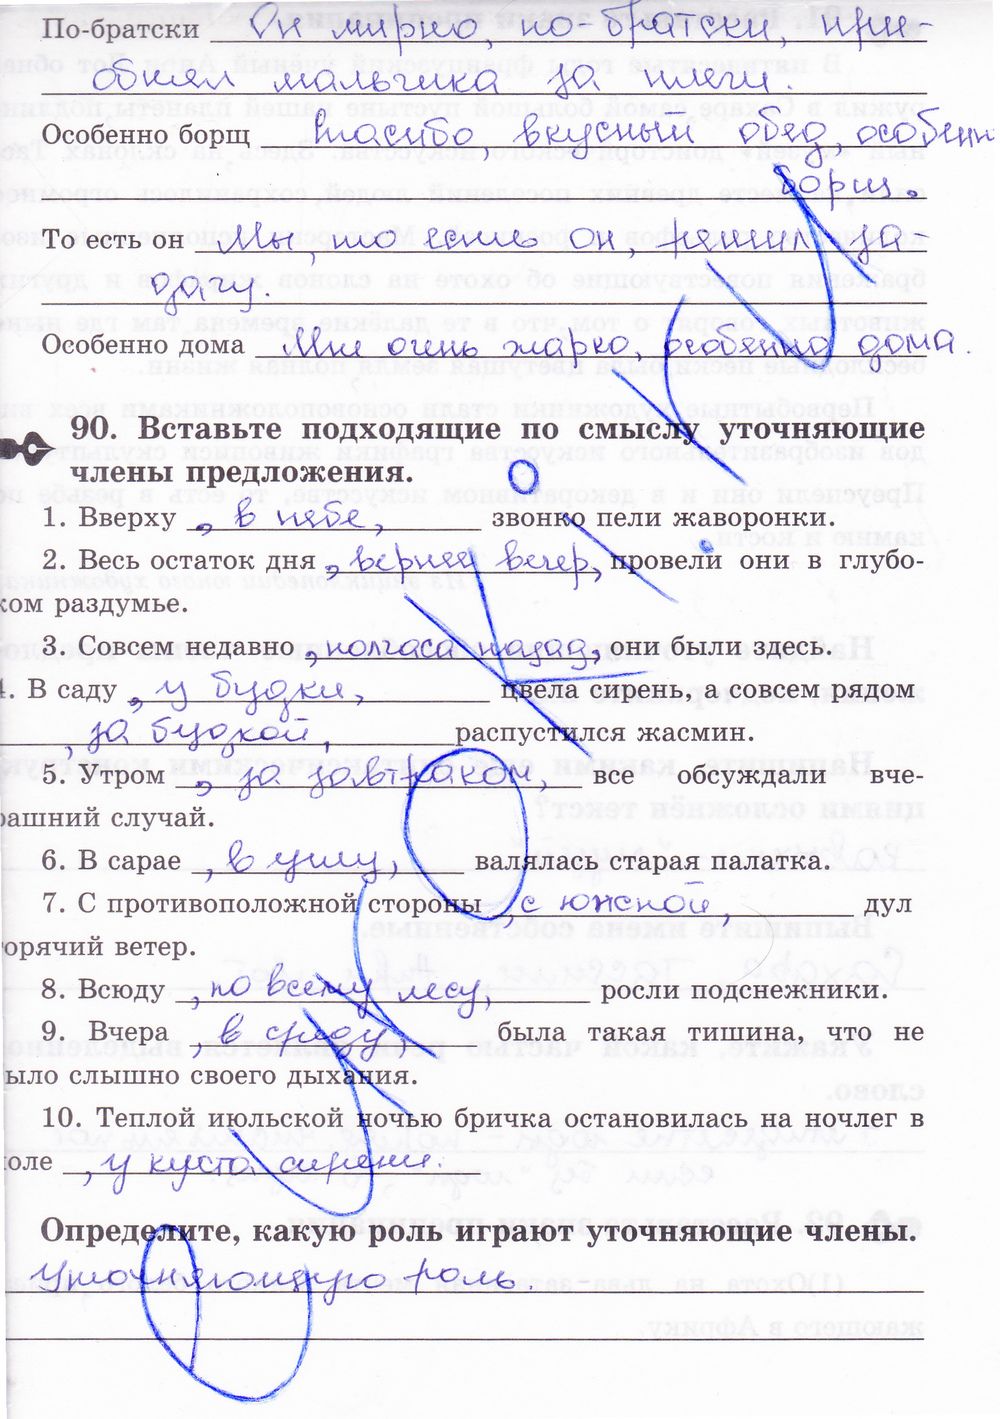 ГДЗ Русский язык 8 класс - стр. 81